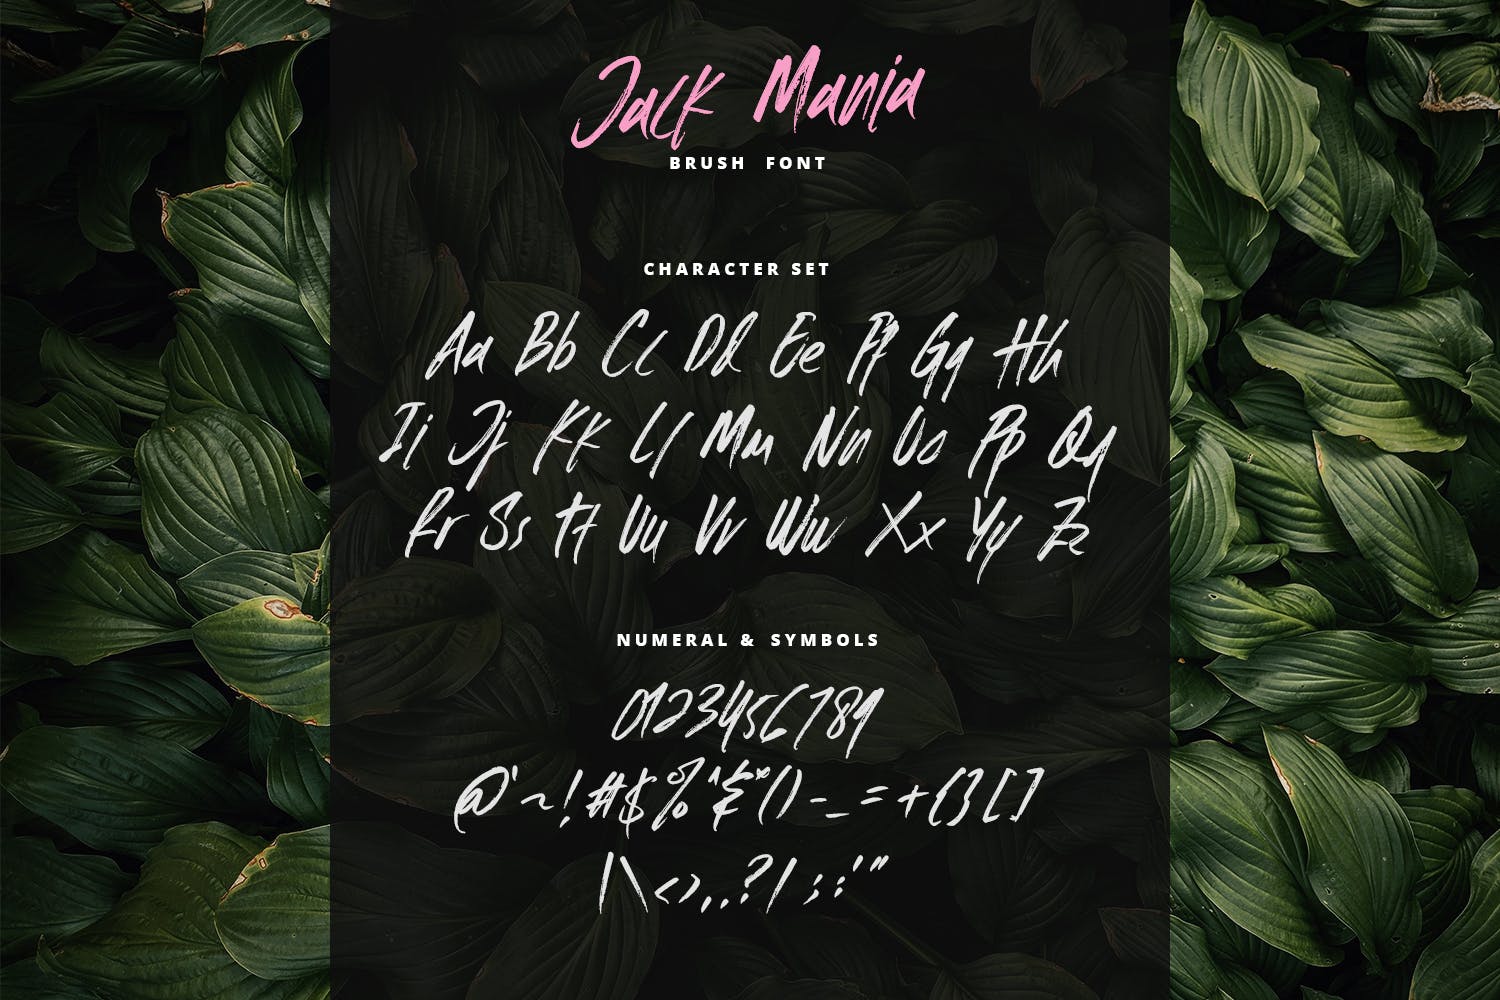 手工绘制英文画笔笔刷书法字体 The JACK MANIA Brush Font插图(6)